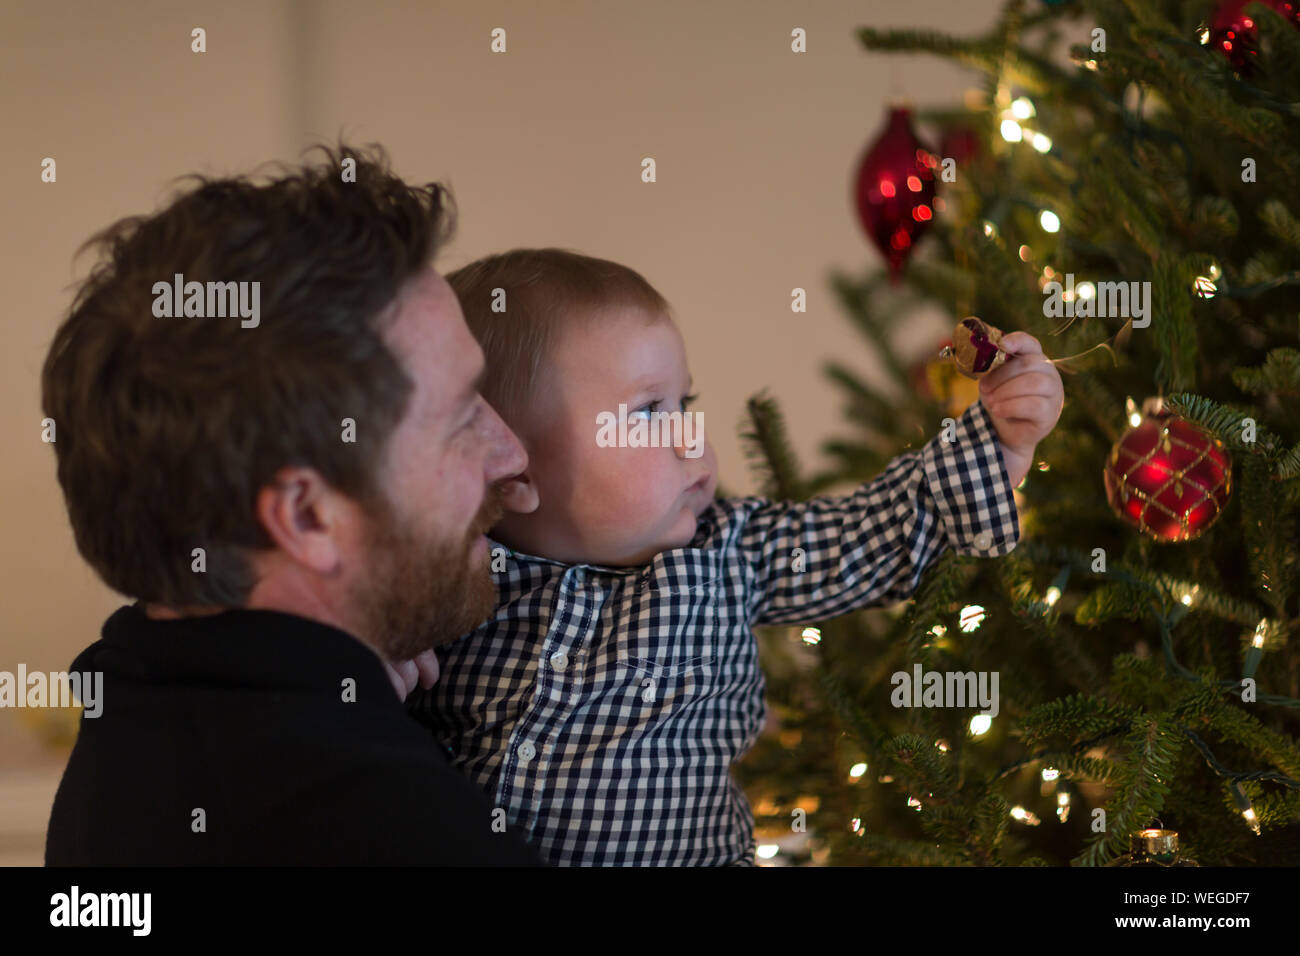 El padre tiene 1 años de edad que está alcanzando para decorar el árbol de Navidad Foto de stock